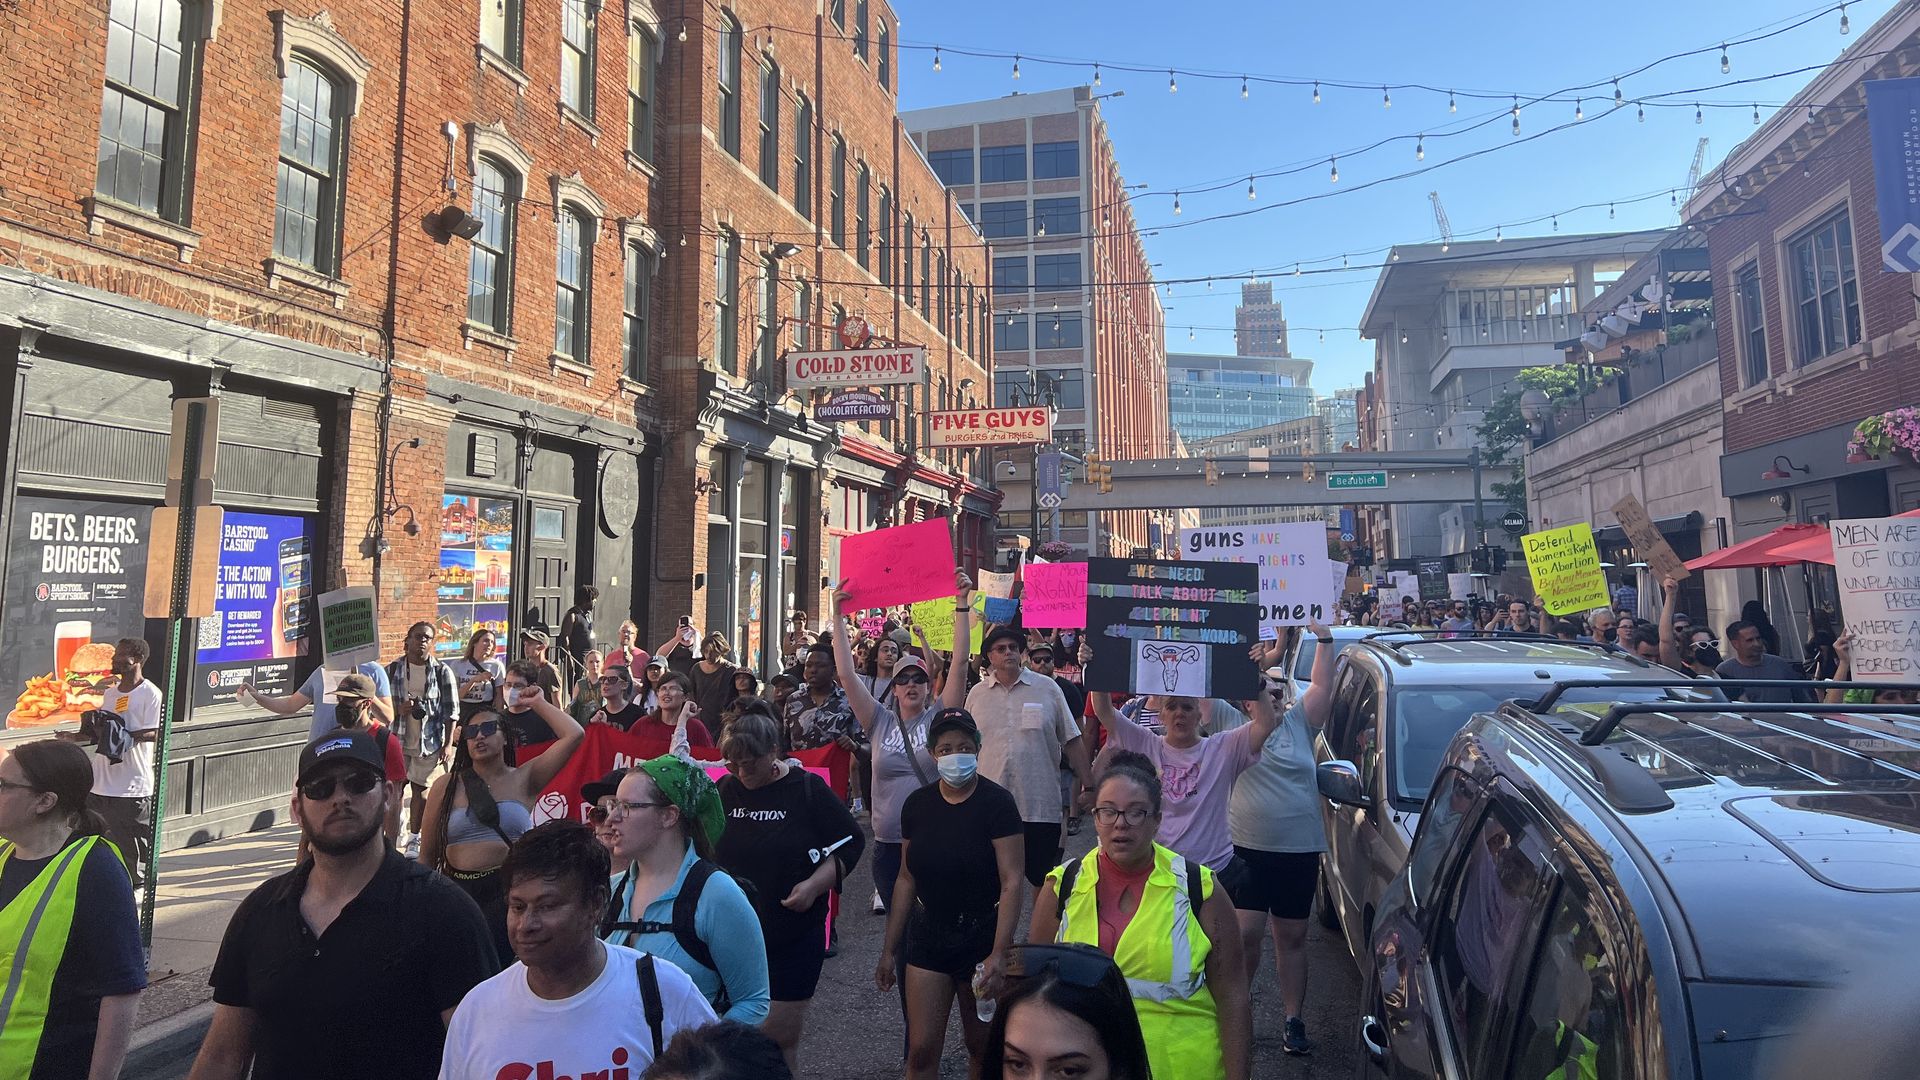 Abortion advocates march through Greektown